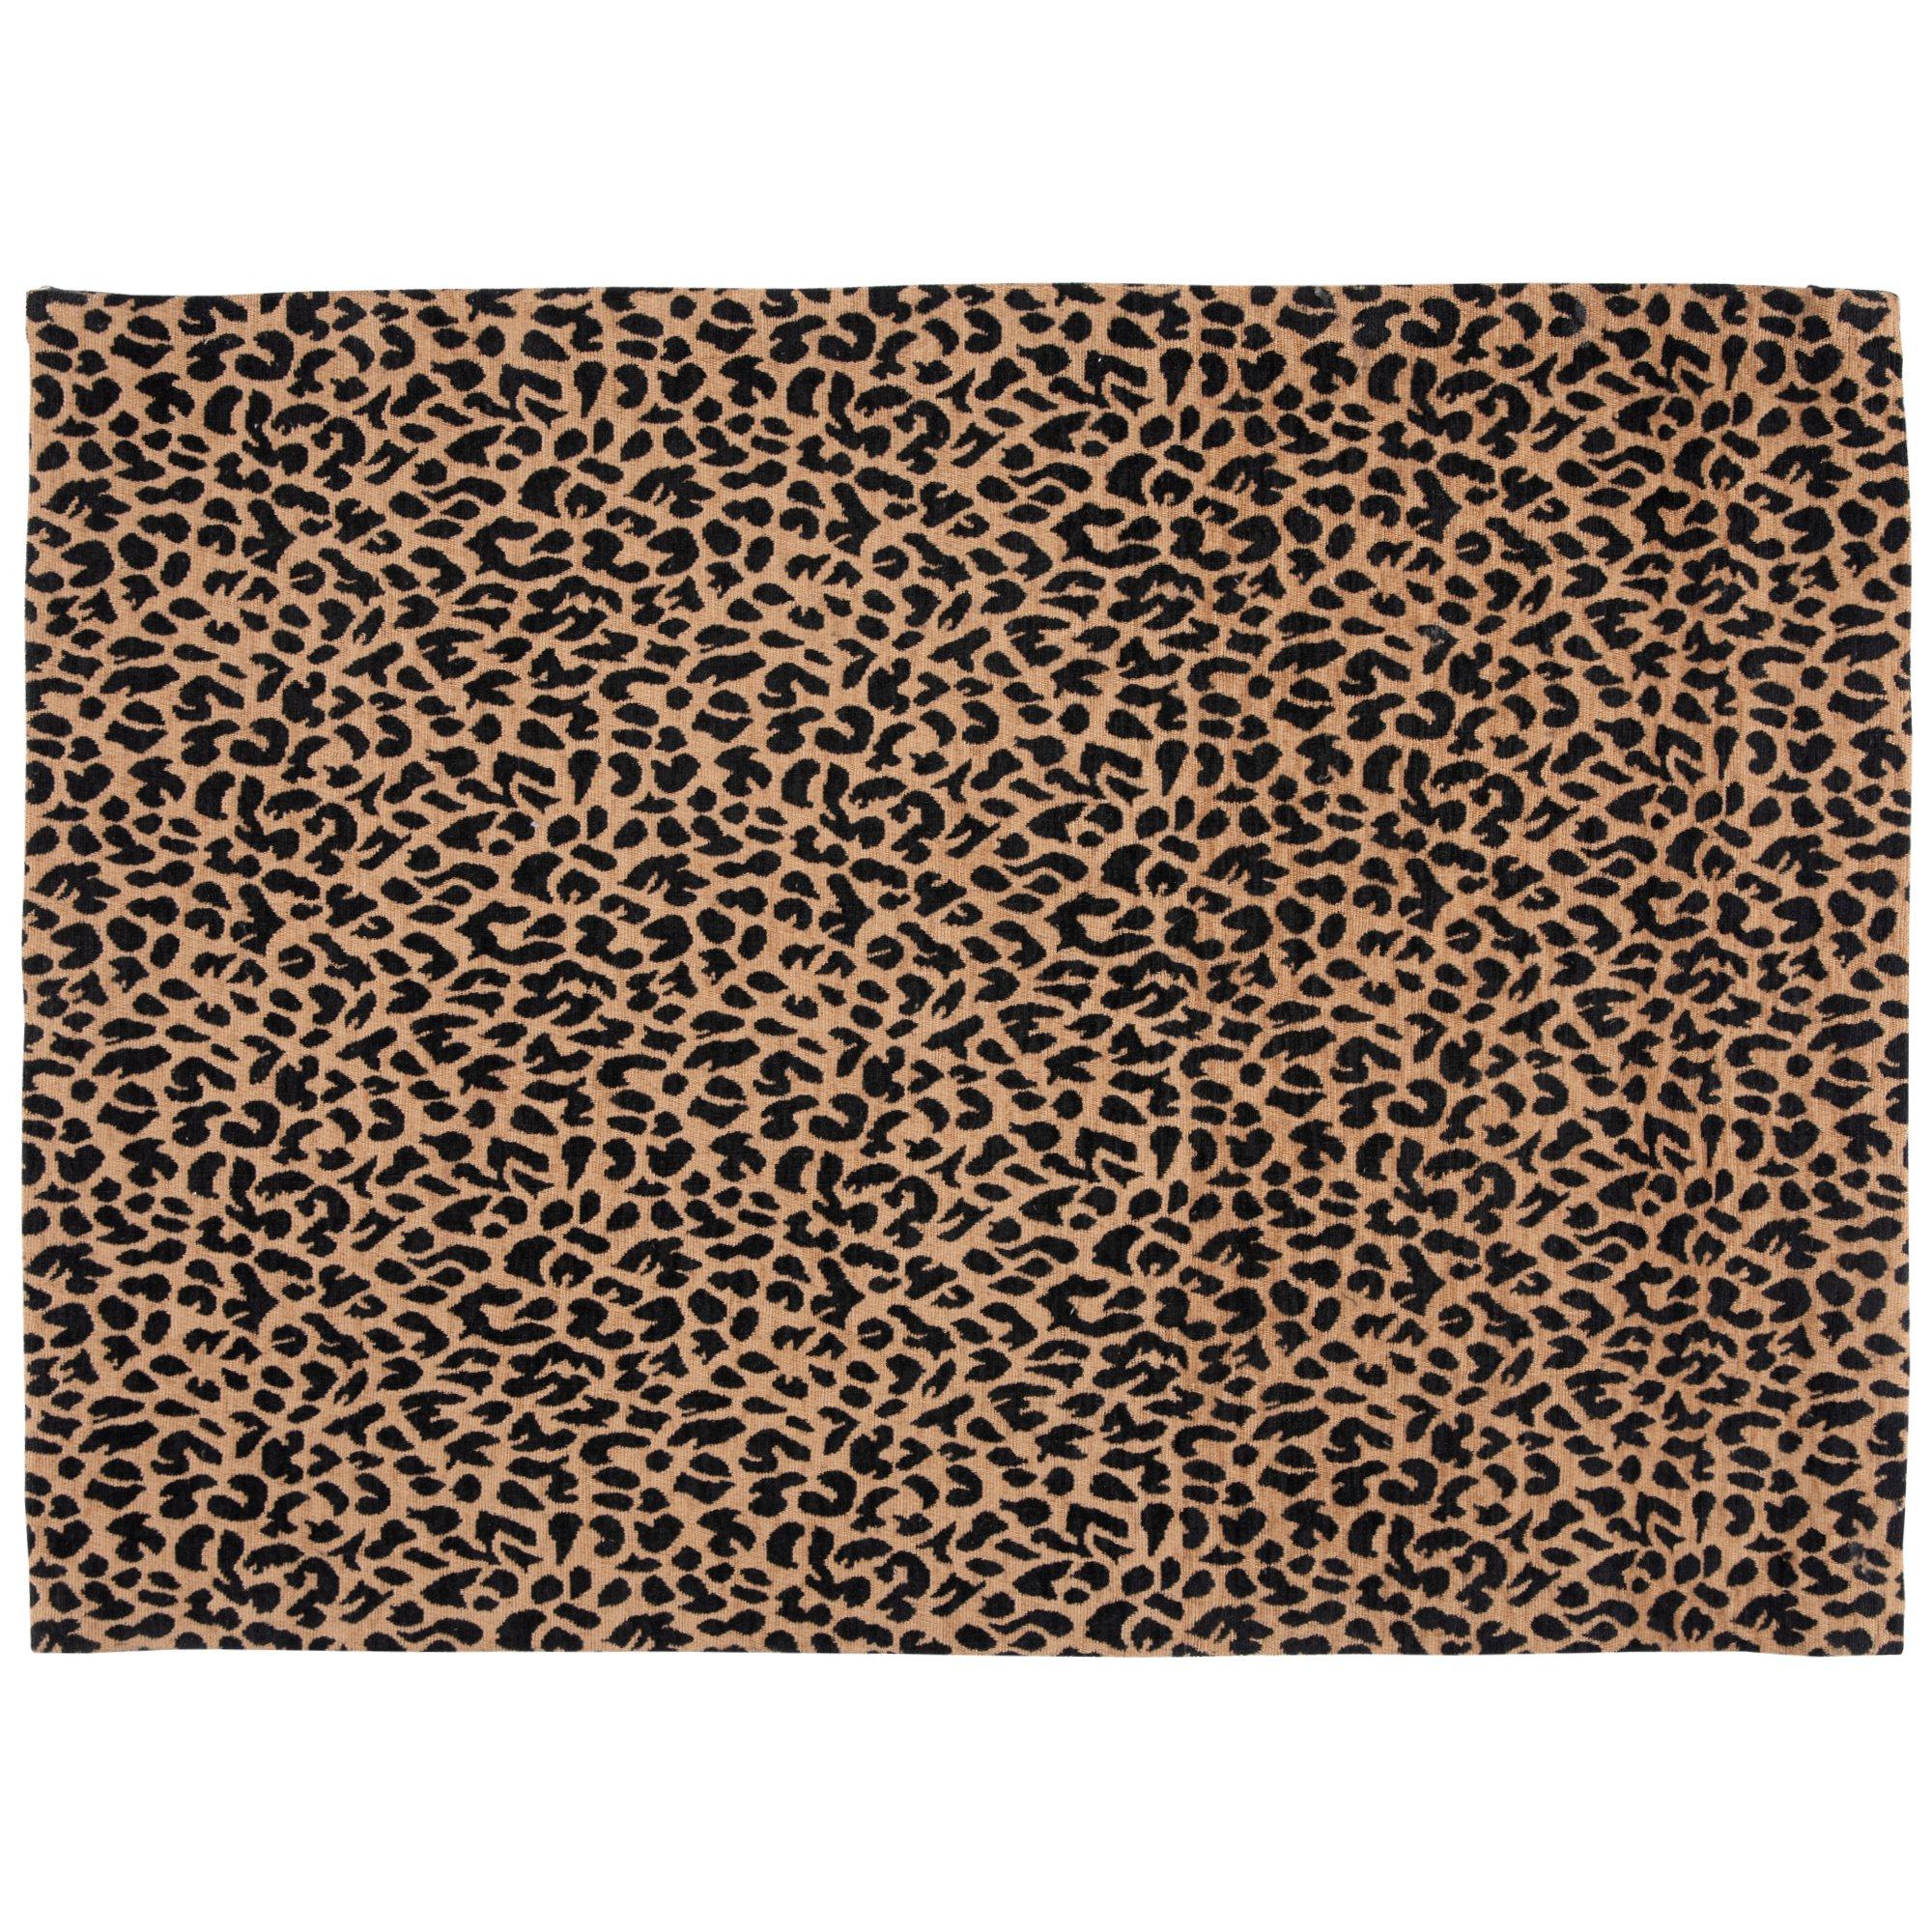 leopard-print-rug-hobby-lobby-1967041